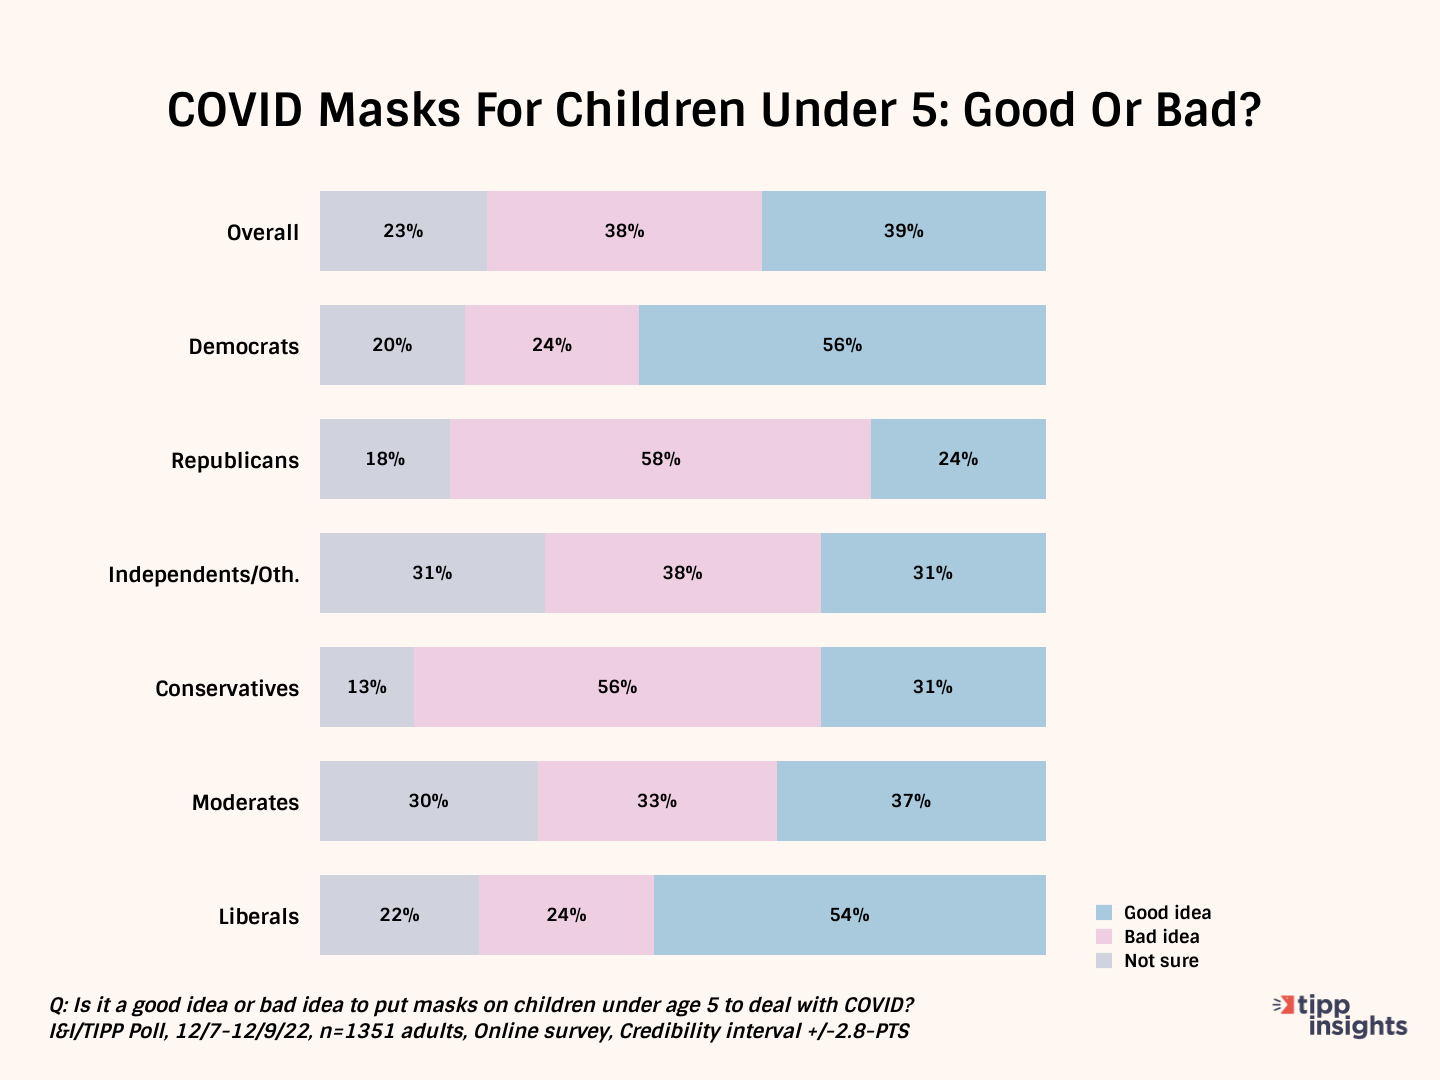 Covid masks for children under 5: Good or Bad?